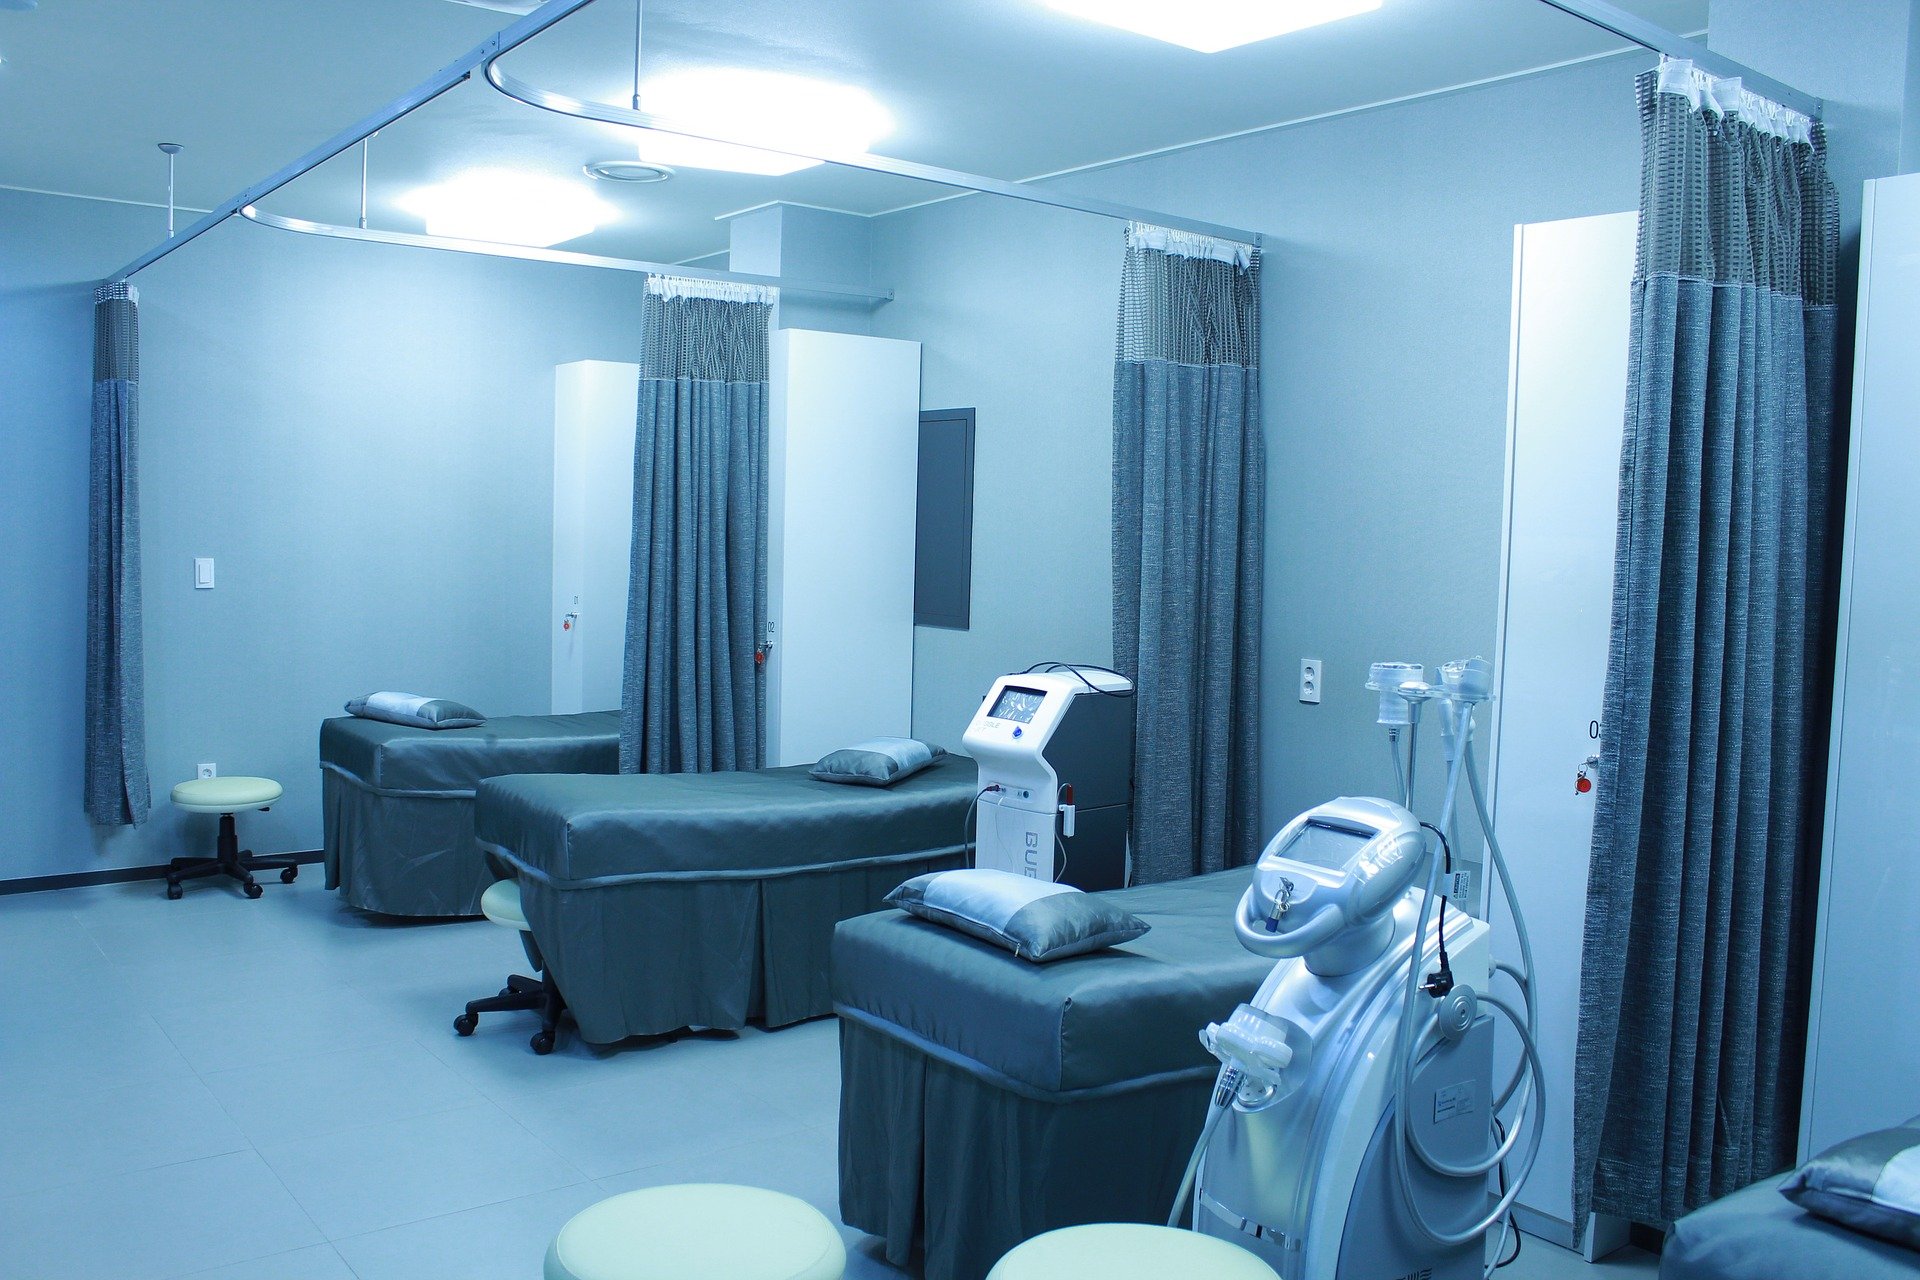 Chambre de l'hôpital. | Photo : Pixabay